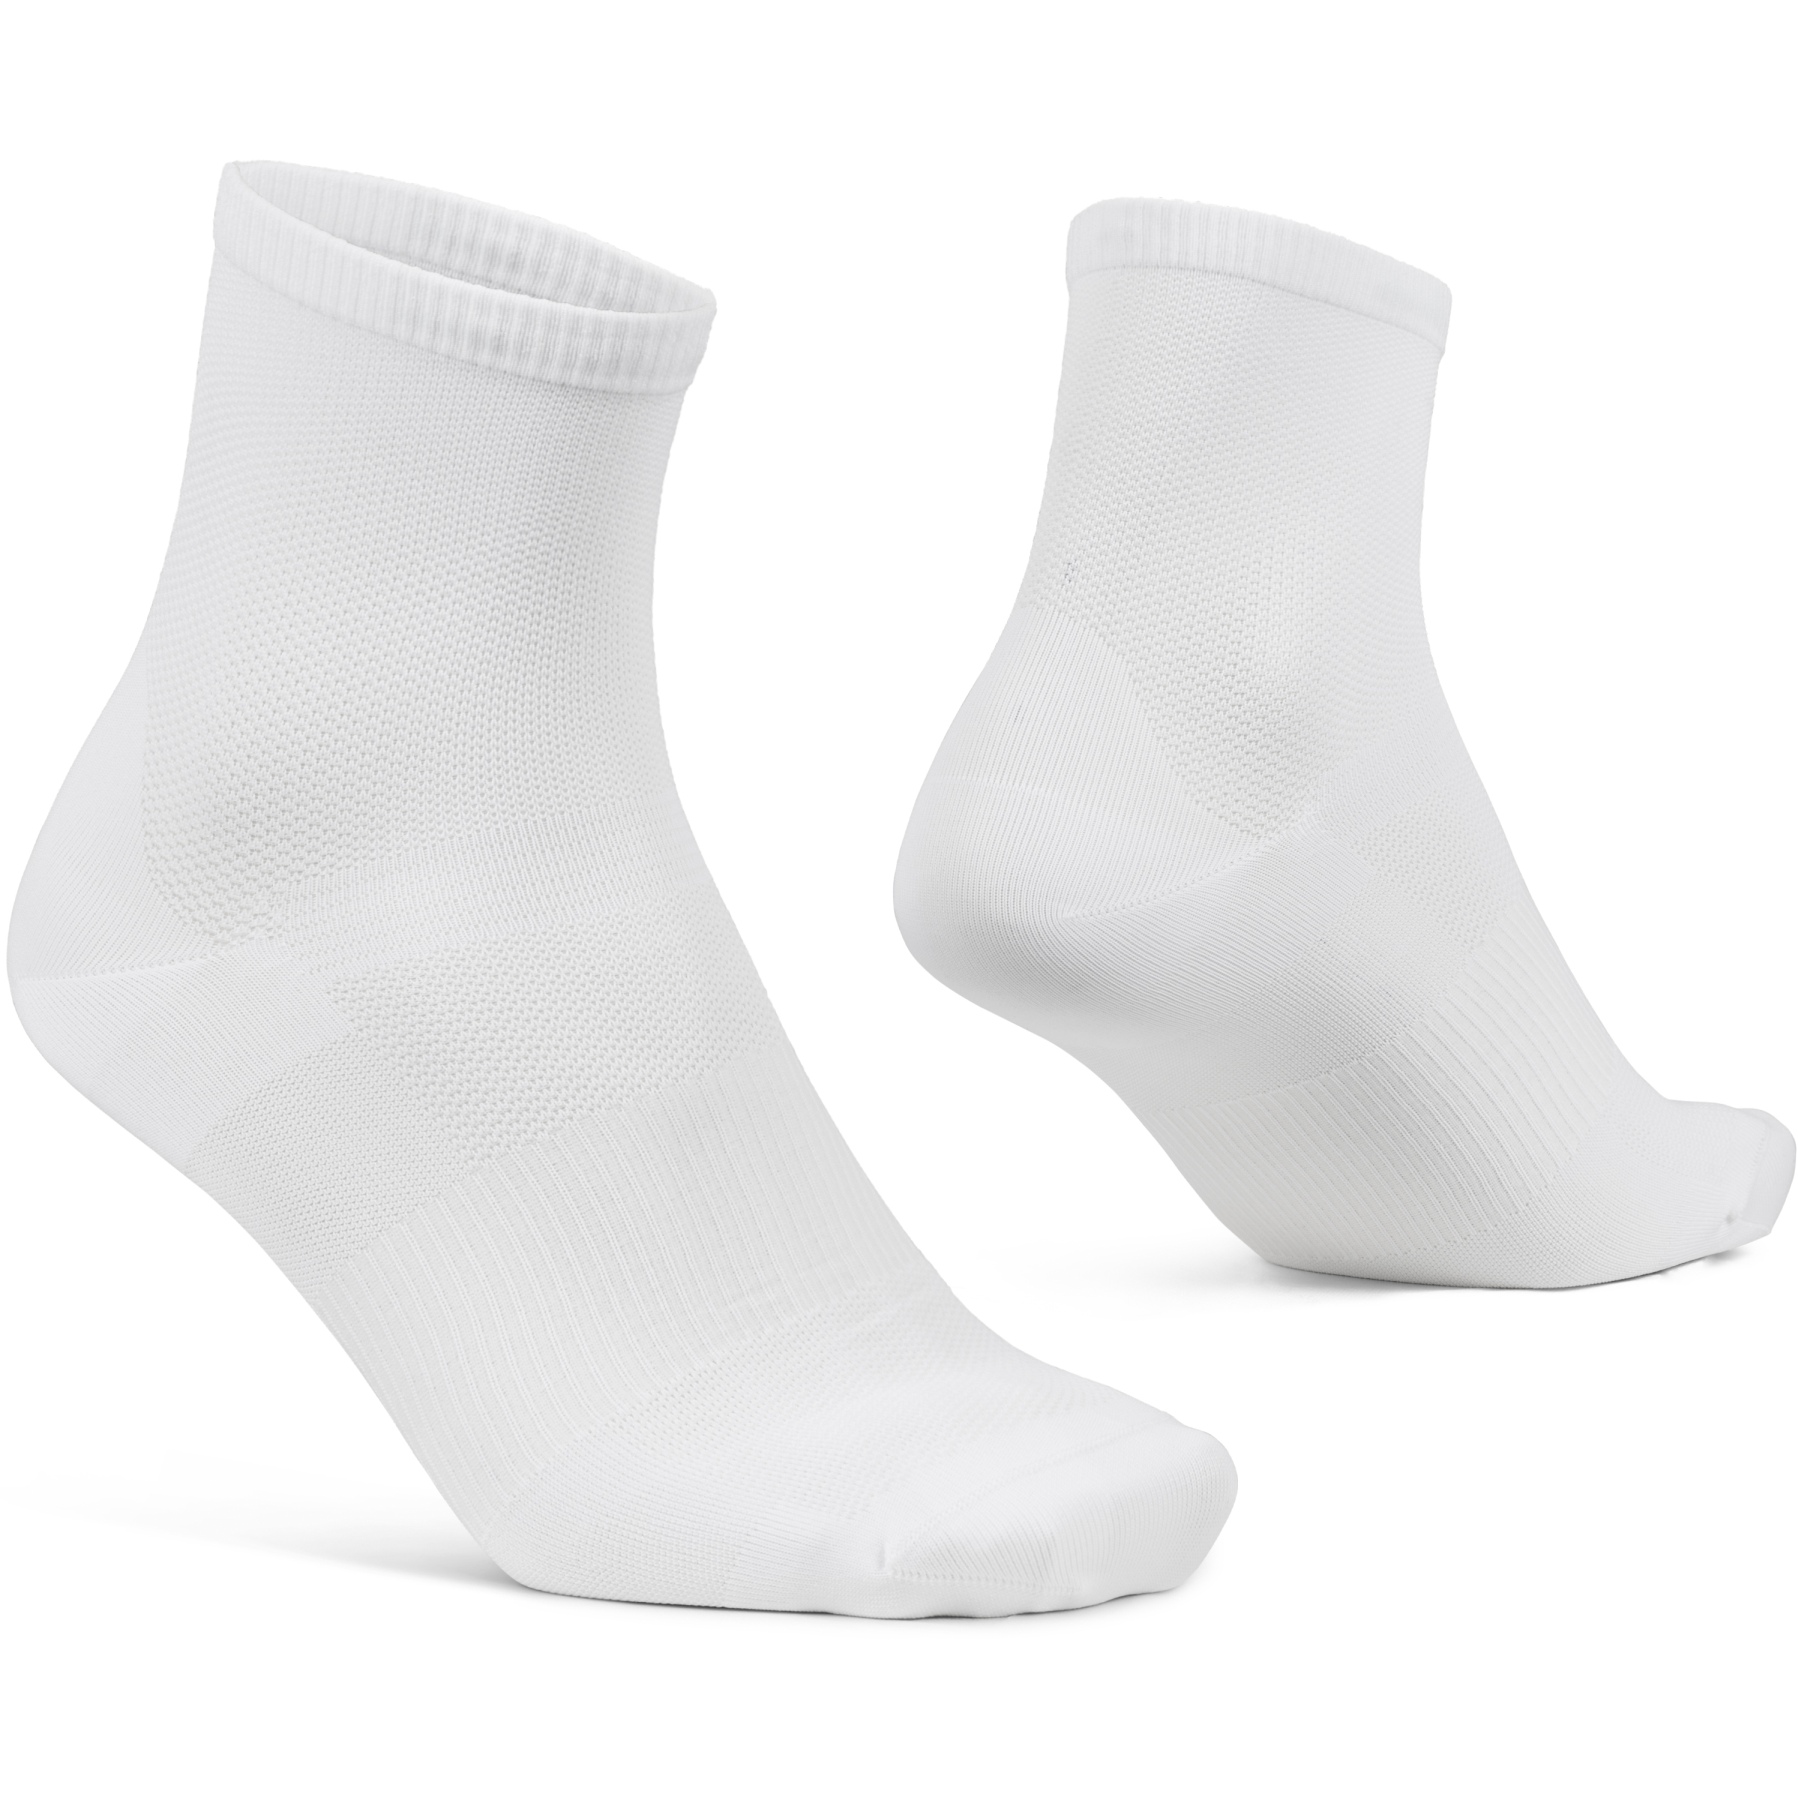 Produktbild von GripGrab Lightweight Airflow Short Socken - Weiß